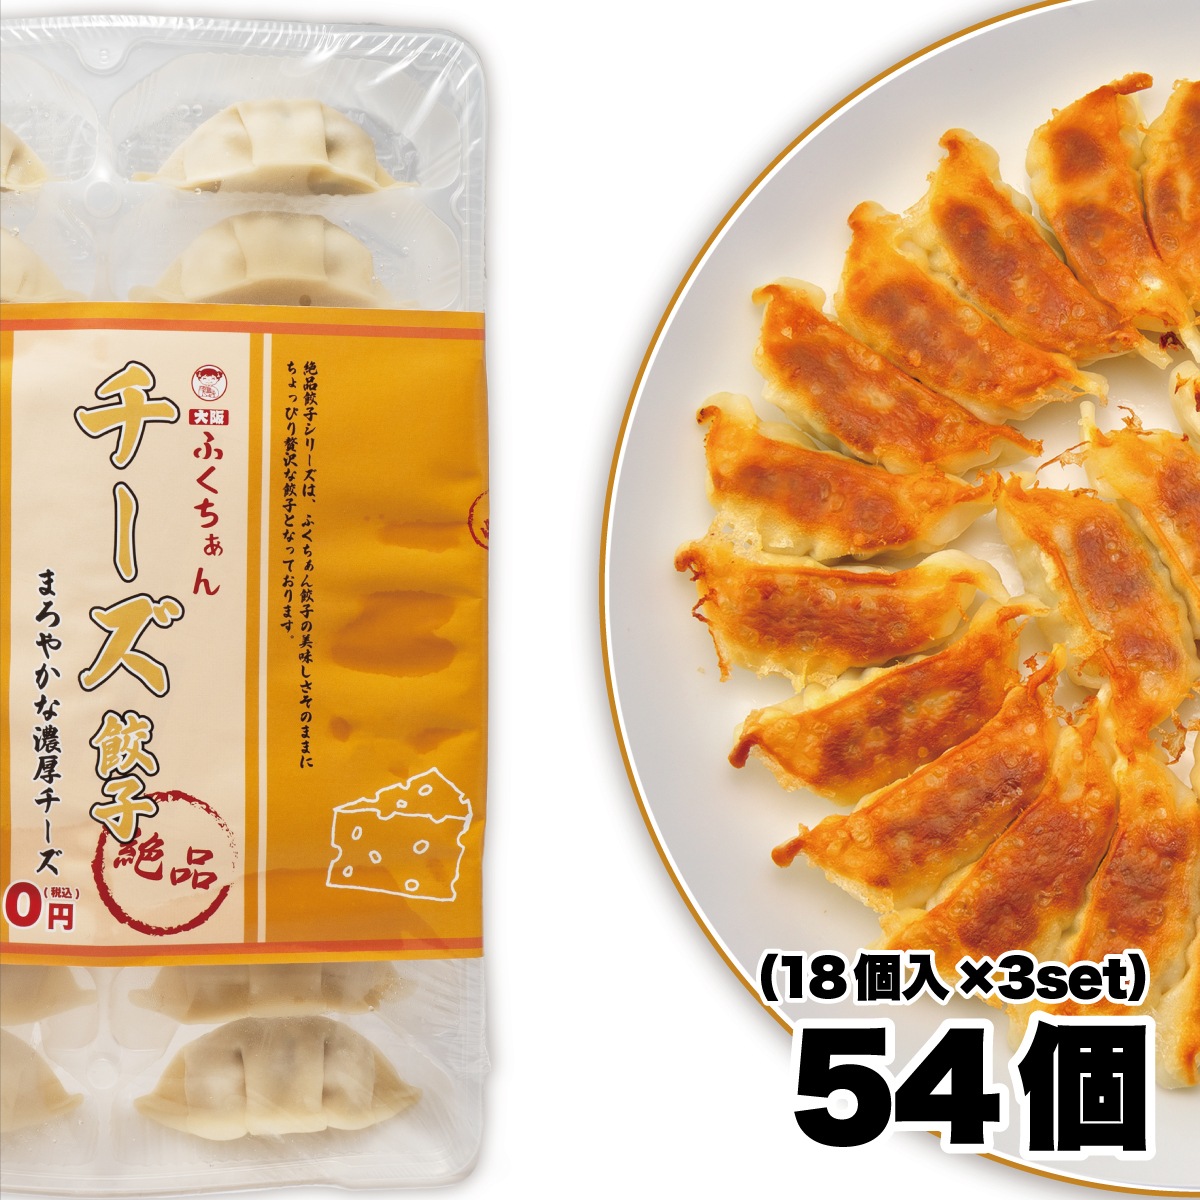 チーズ餃子54個入